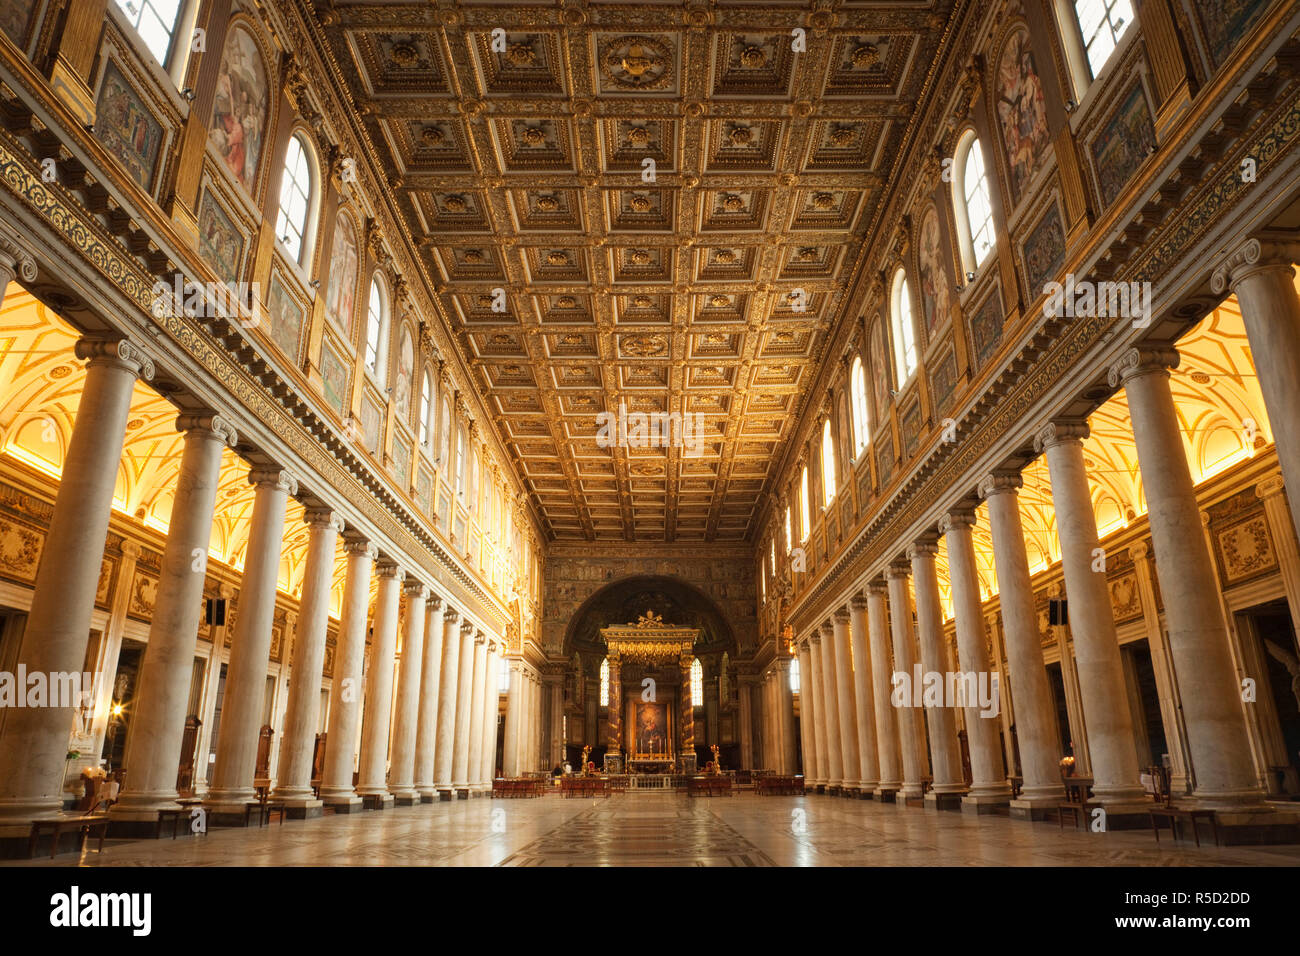 Italy, Rome, Interior of Santa Maria Maggiore Church Stock Photo